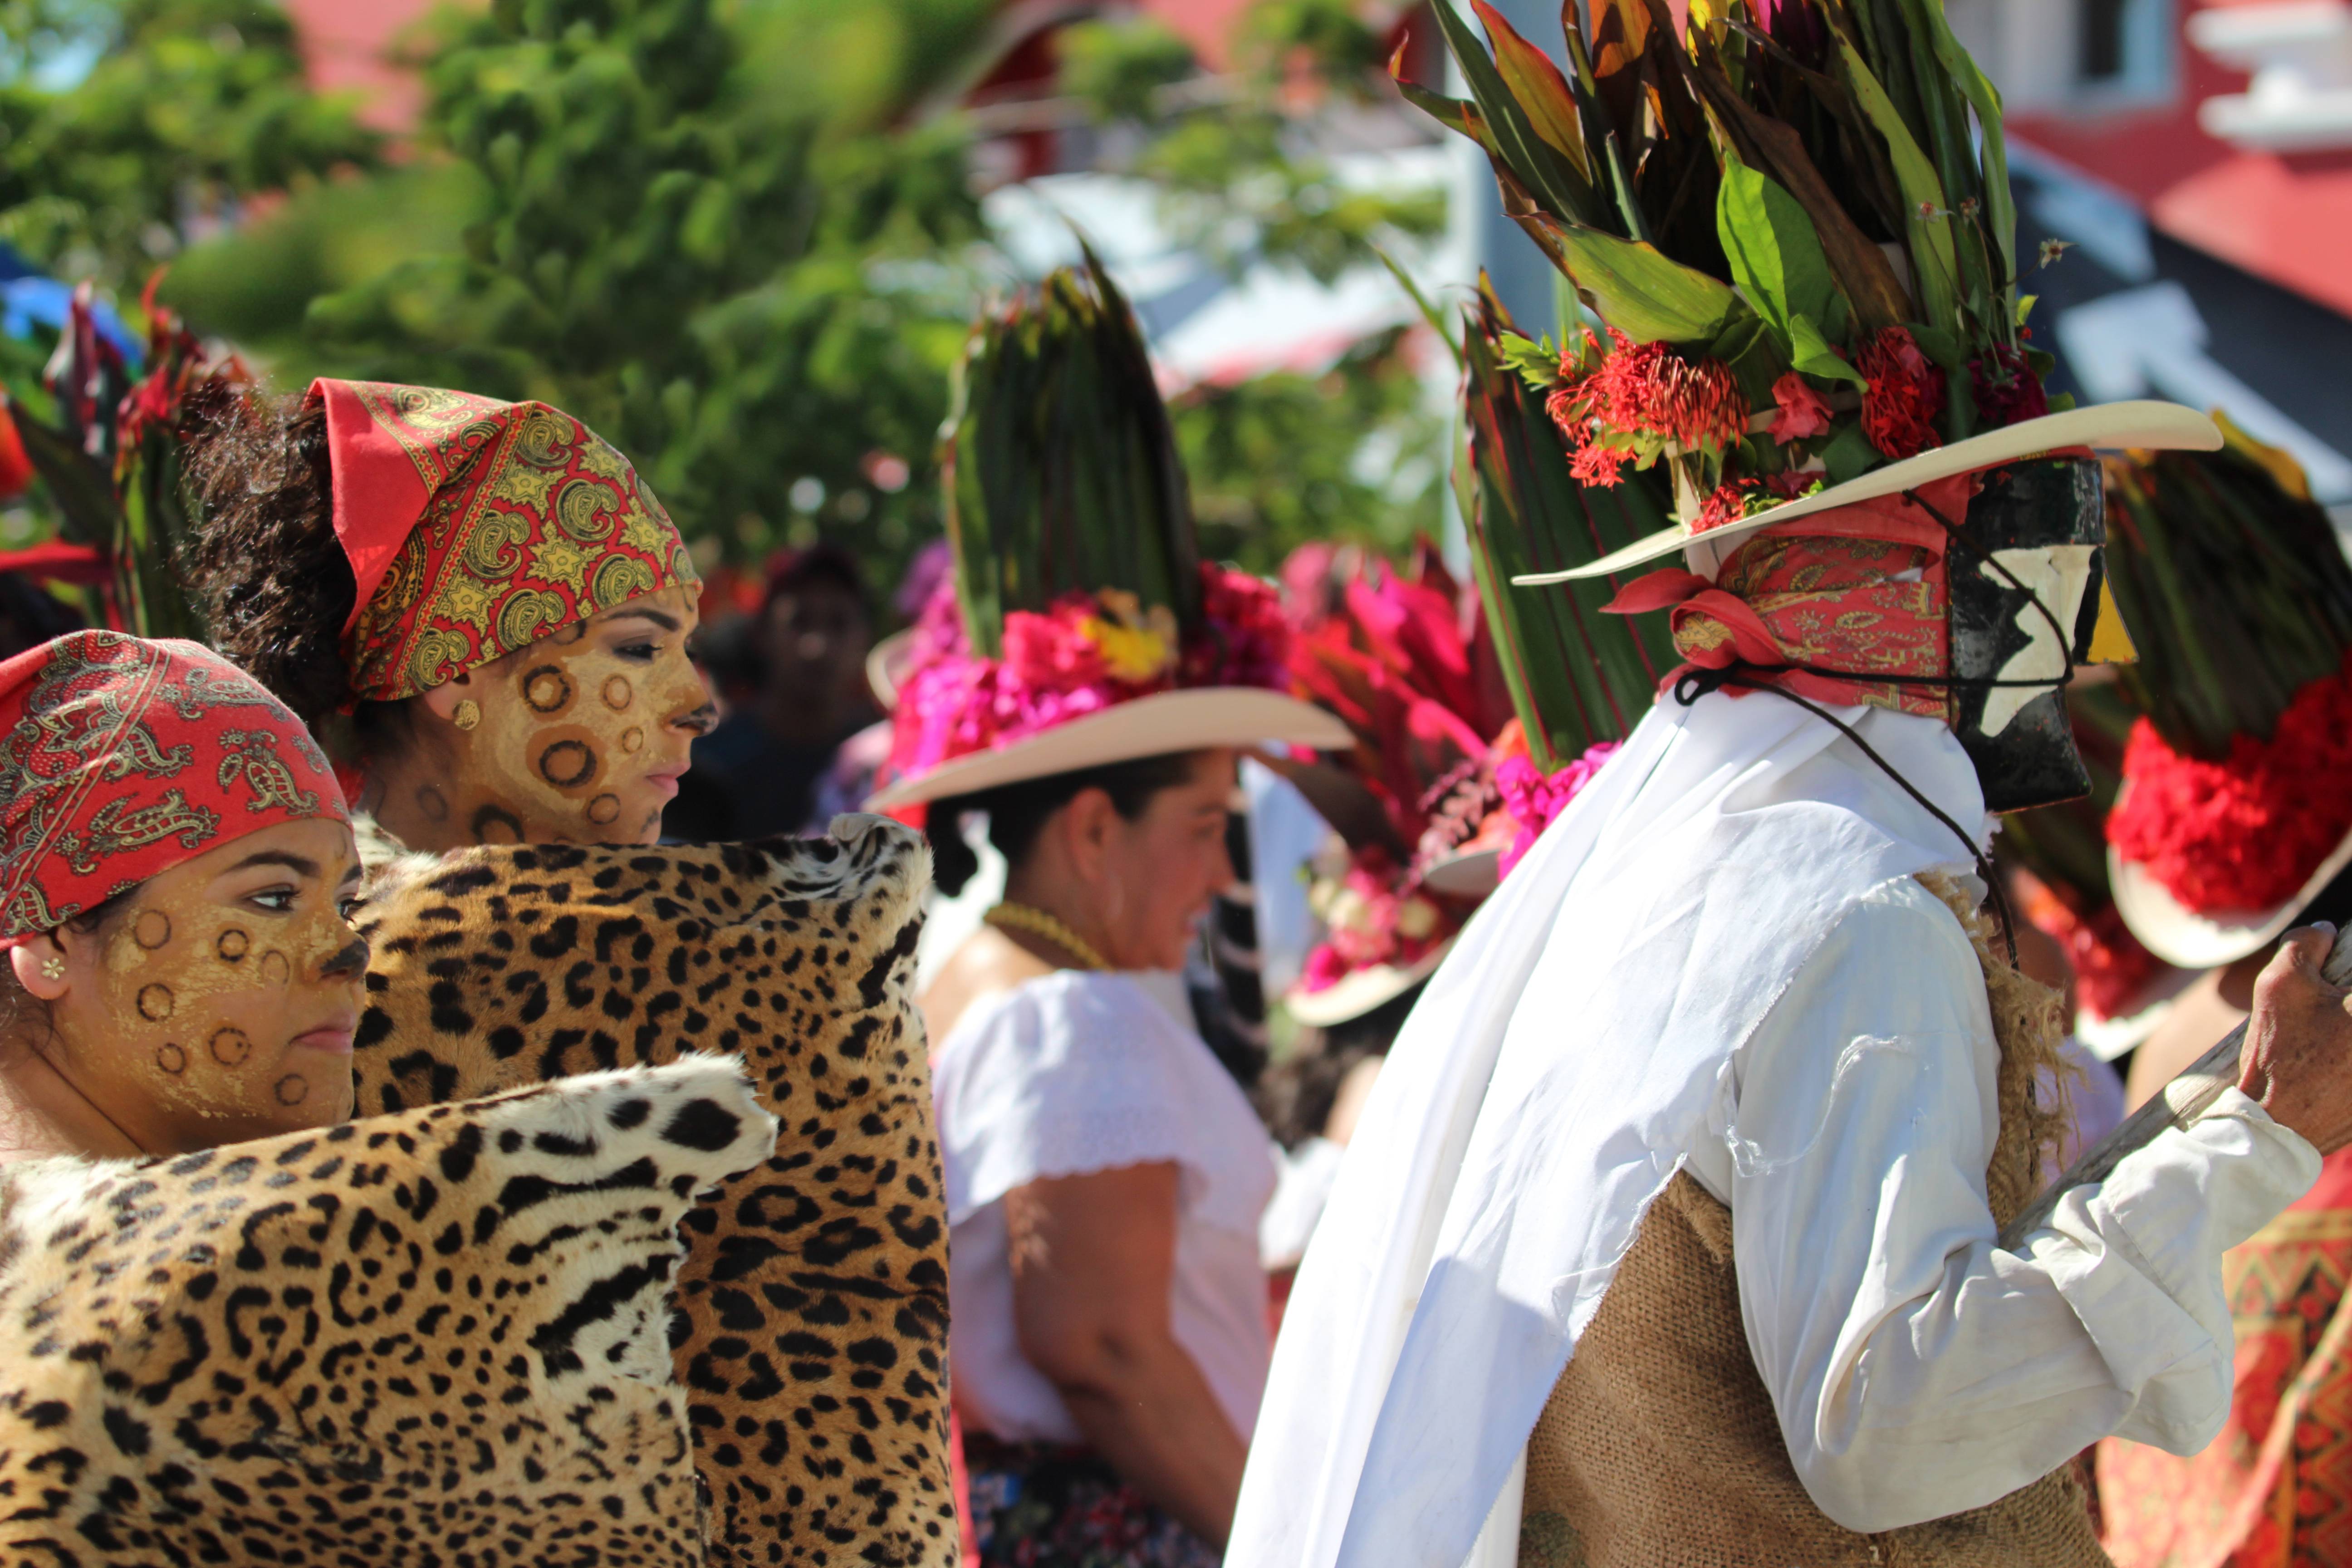 Exposition digitale "Tenosique, un carnaval mexicain unique au monde"